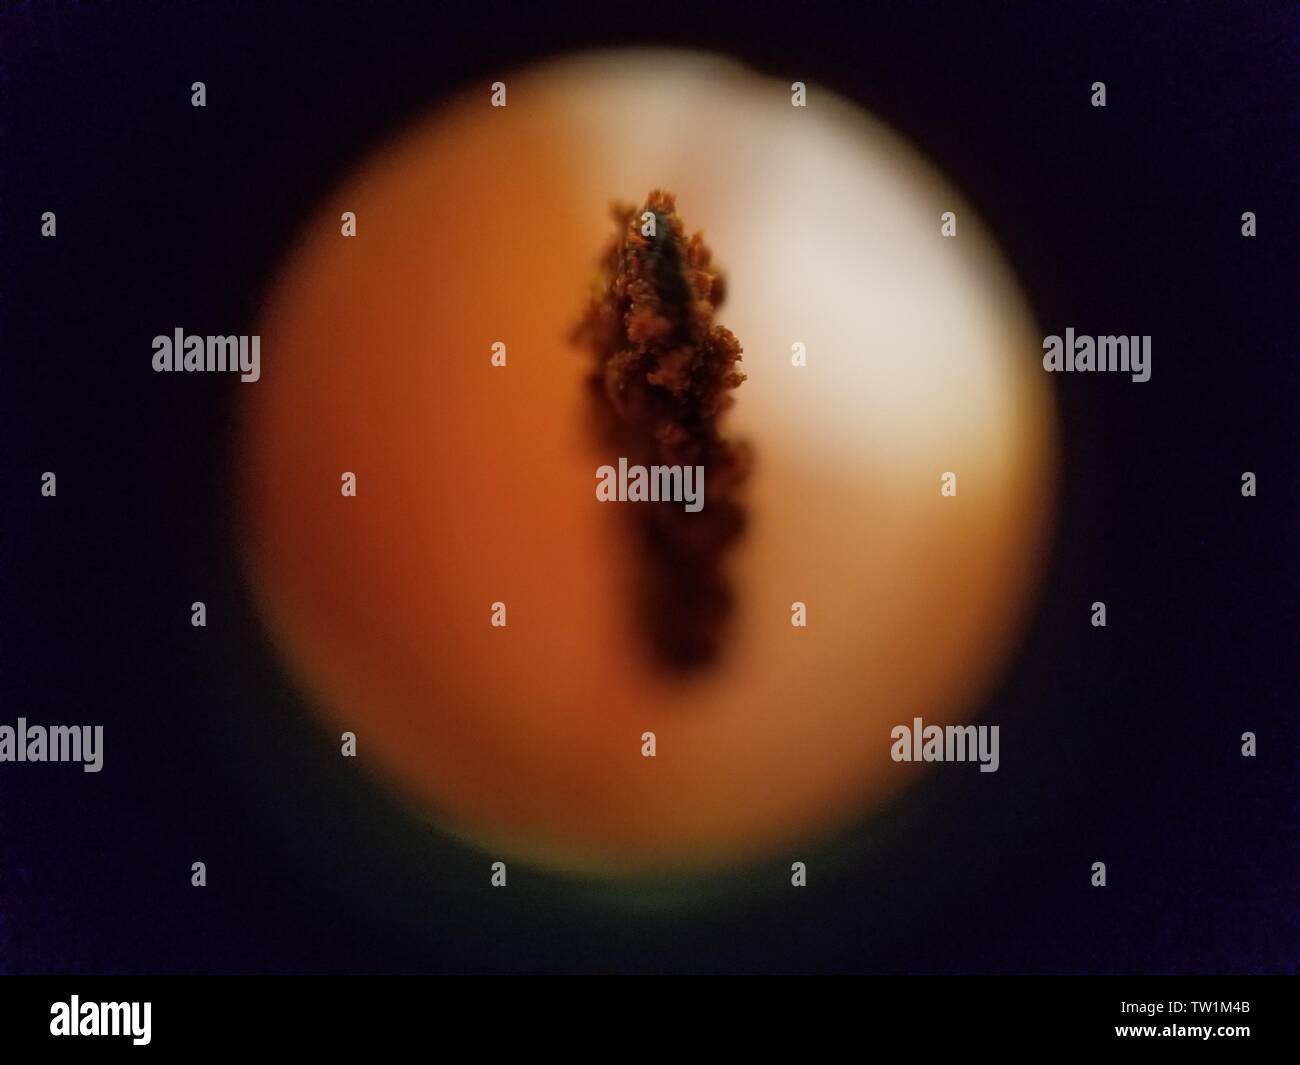 Mikroskopische Aufnahme von Pollen Granulat auf dem staubgefäß einer Lilie Blume (Lilium) bei etwa 30-facher Vergrößerung, 25. Mai 2019. () Stockfoto